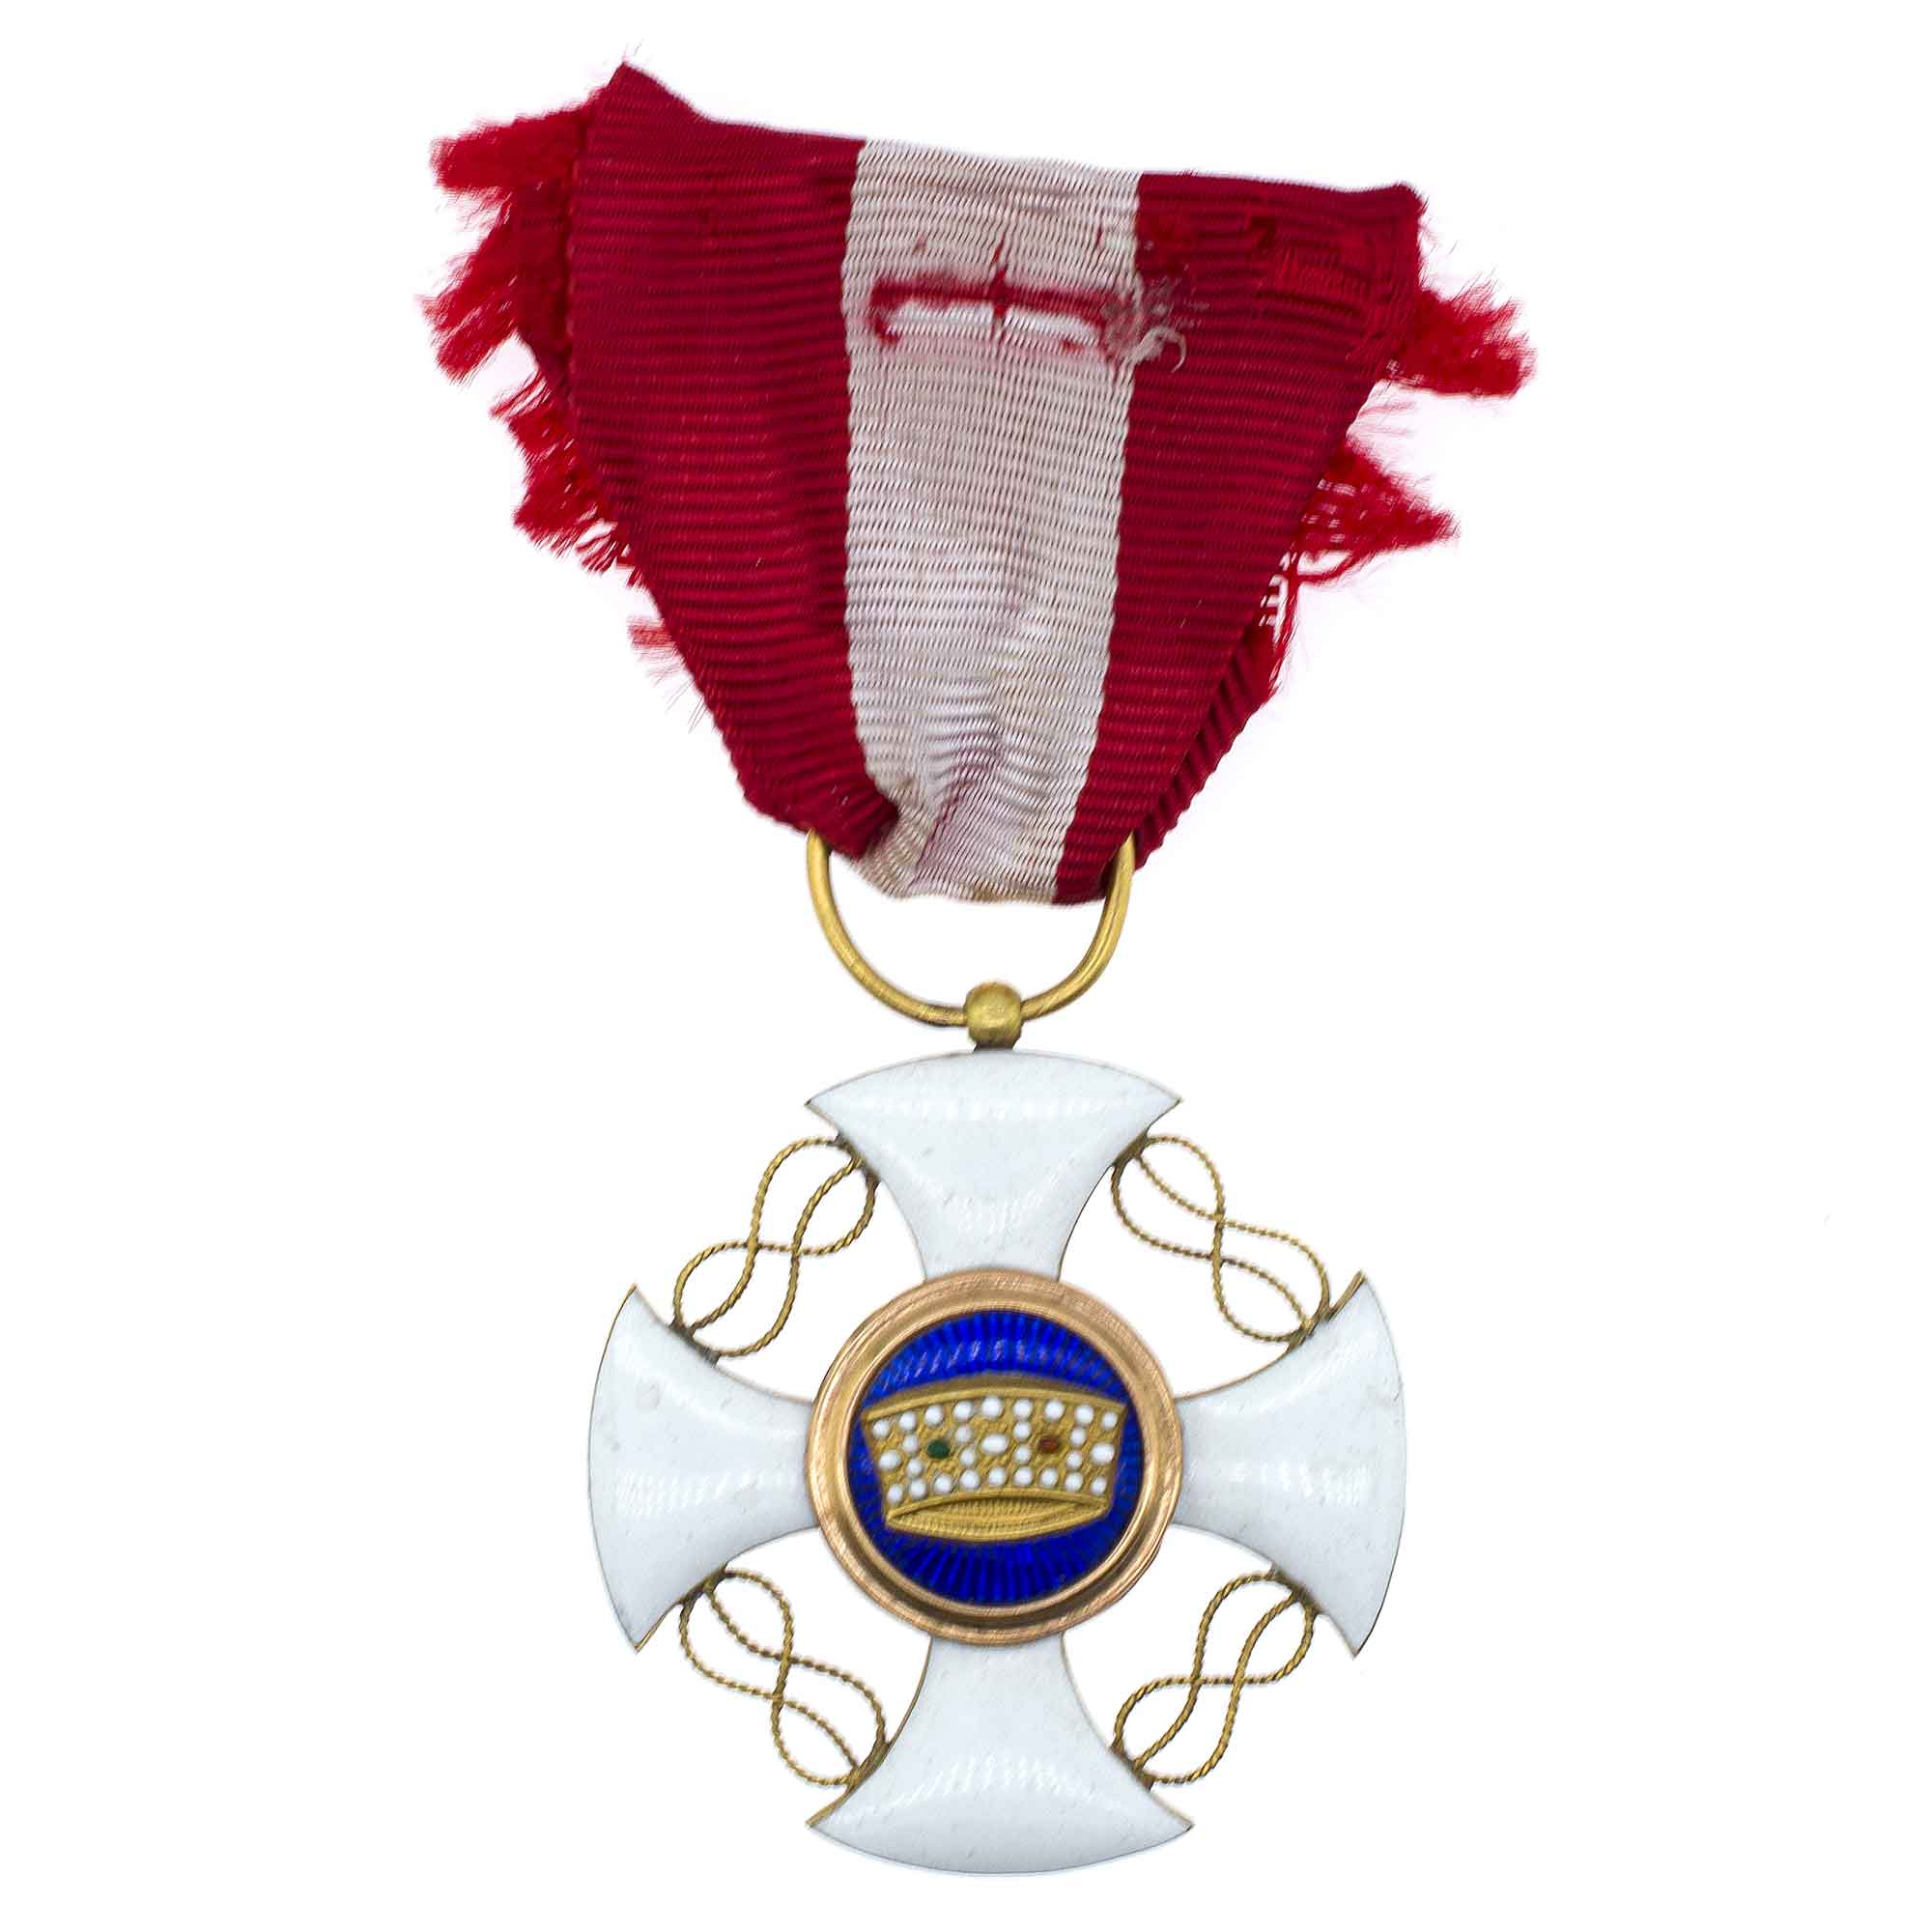 Италия. Знак Ордена (Крест Рупперта) "Короны Италии" 5 степень. Рыцарь.